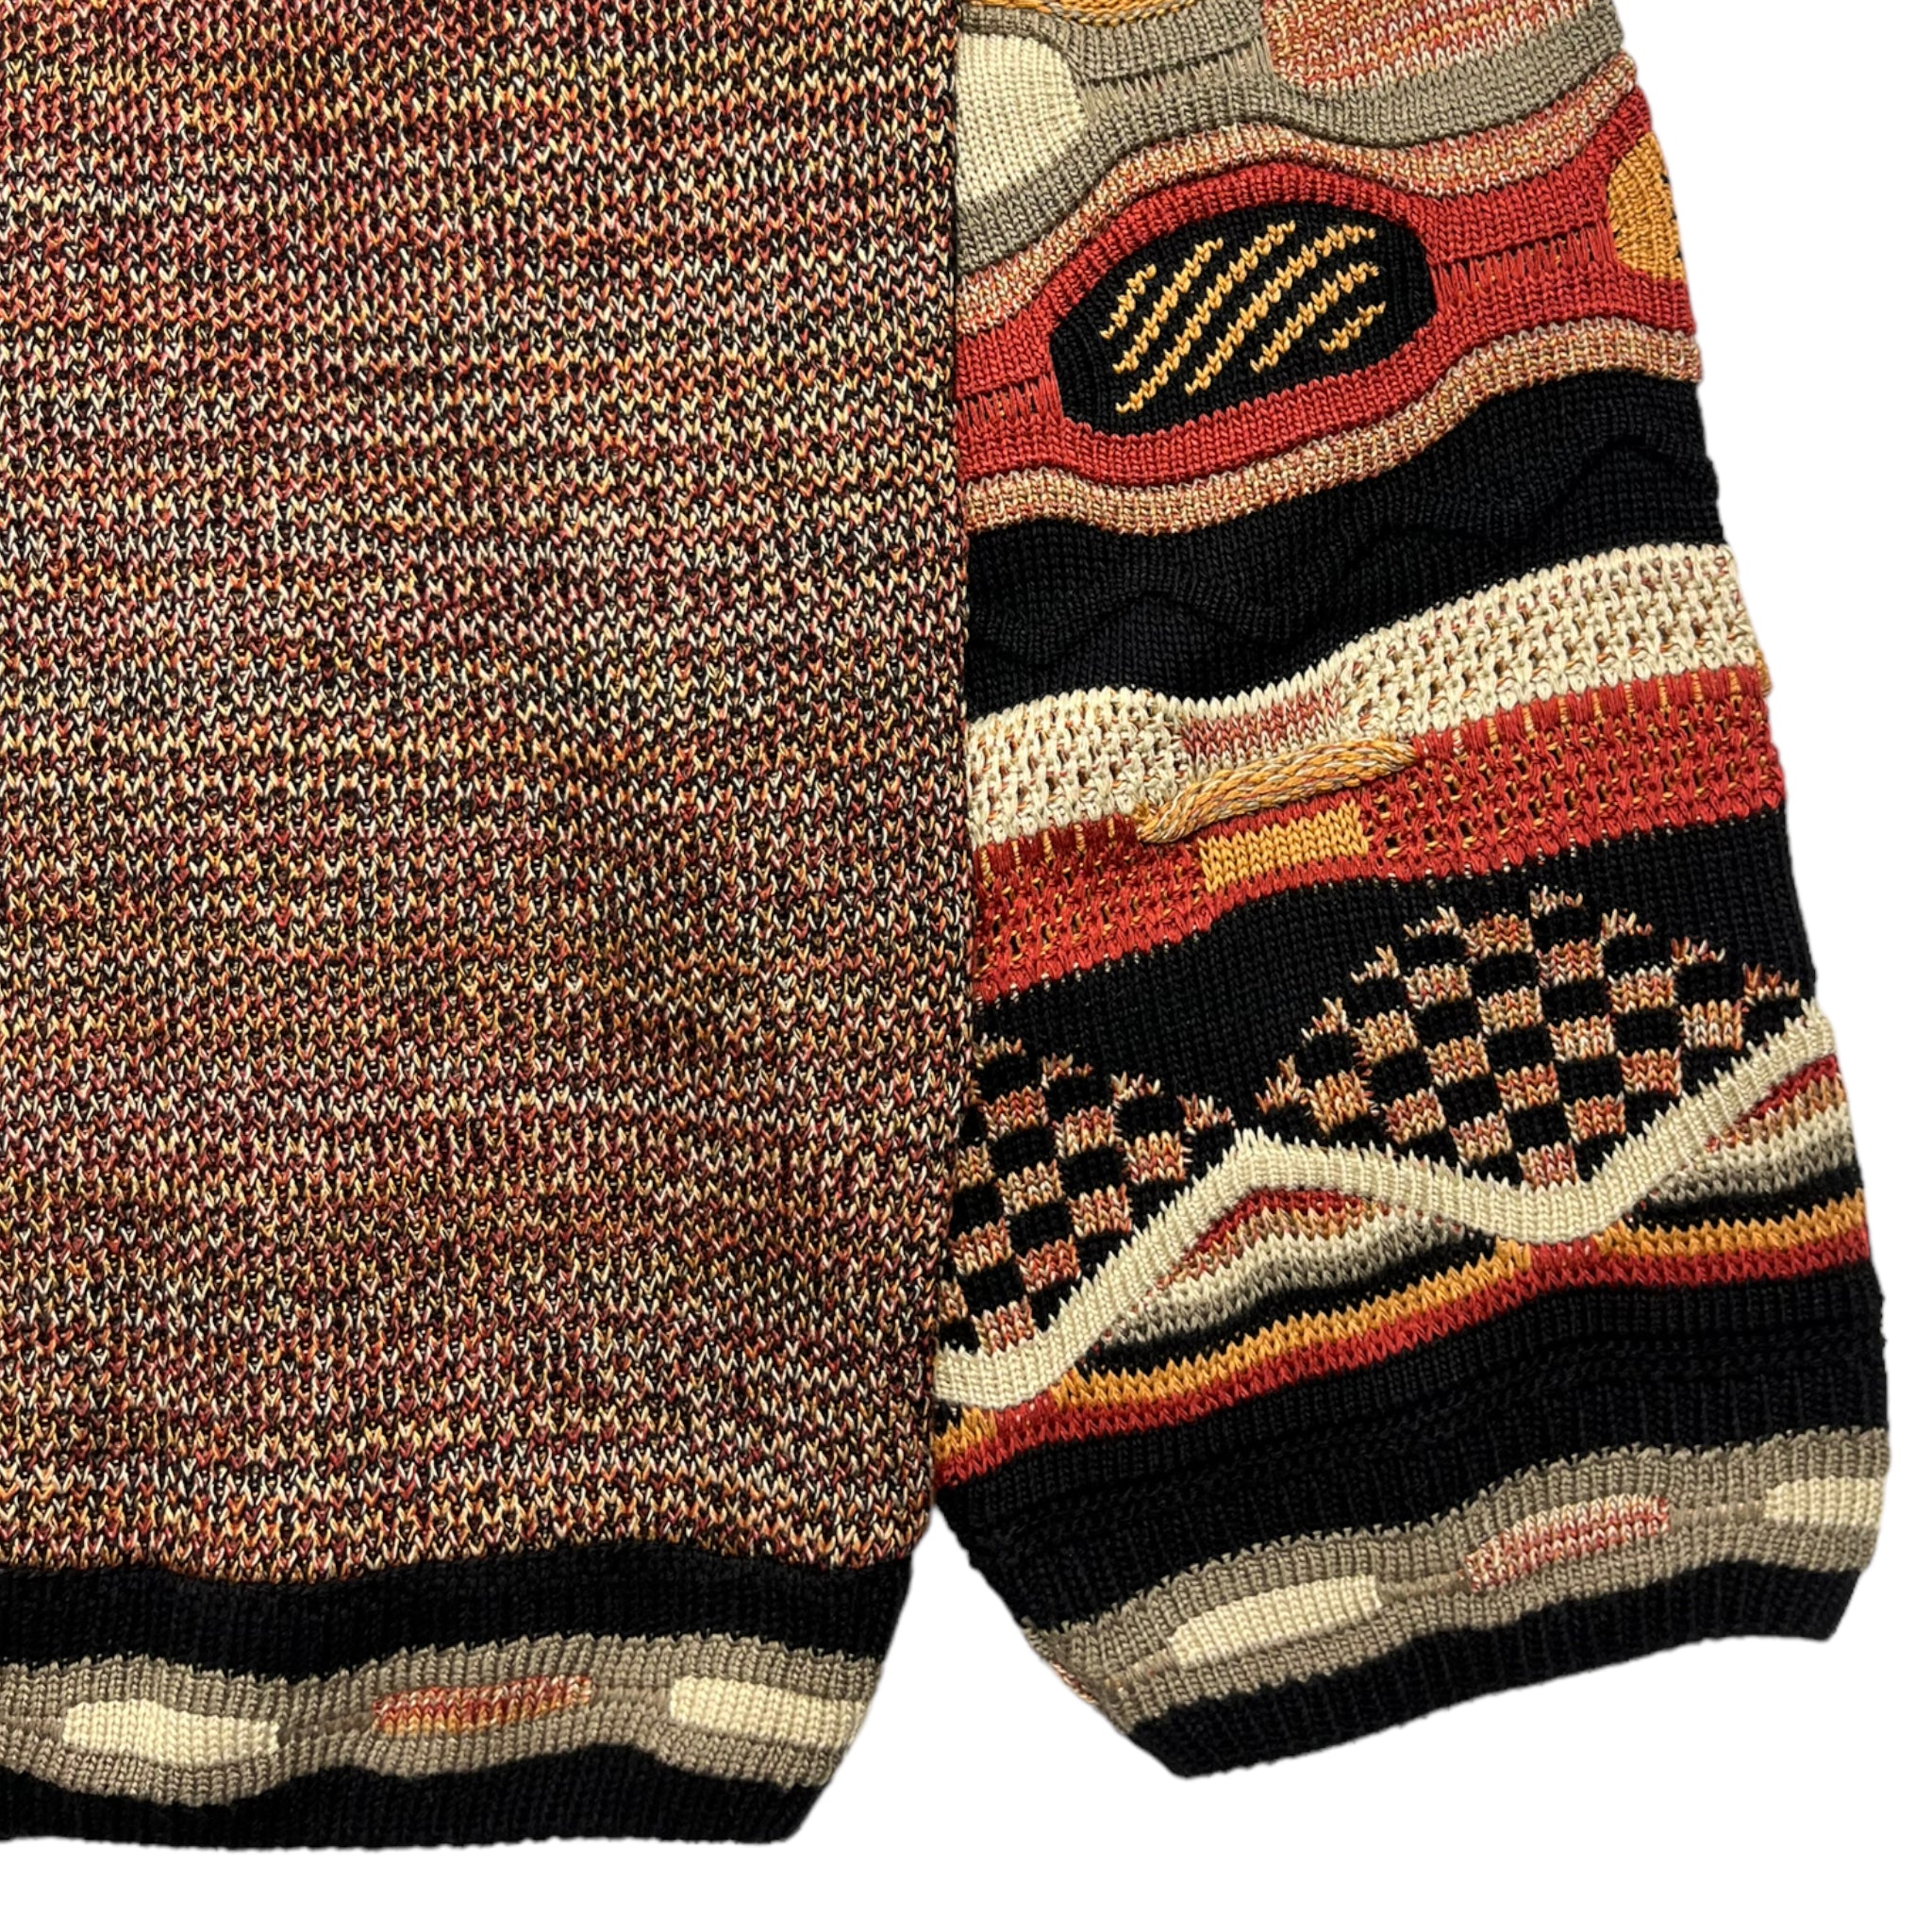 Vintage LaVane 3D Knit Sweater